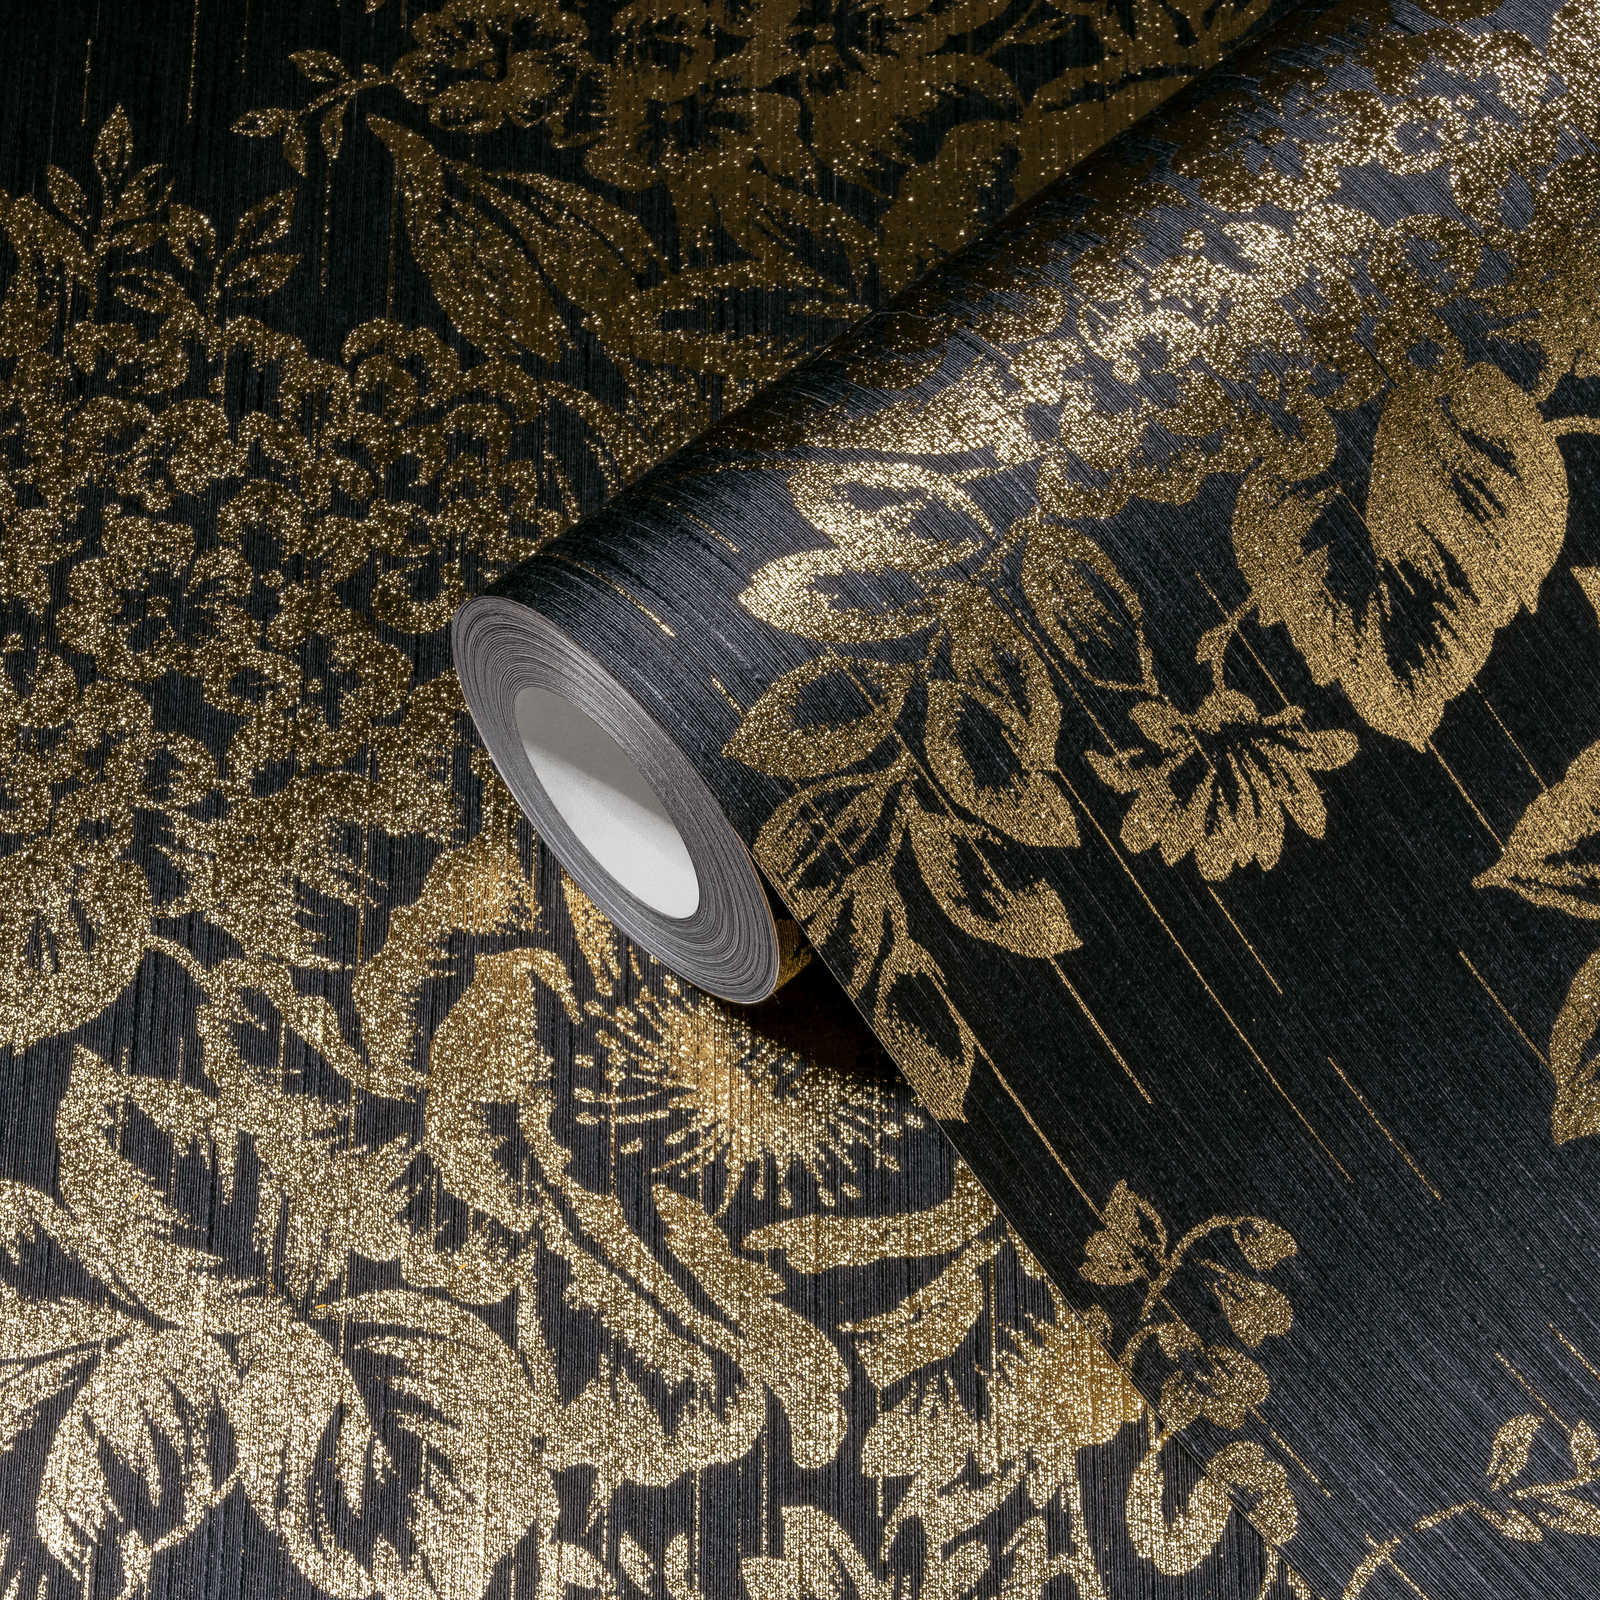             Papier peint structuré avec motif floral doré - or, noir
        